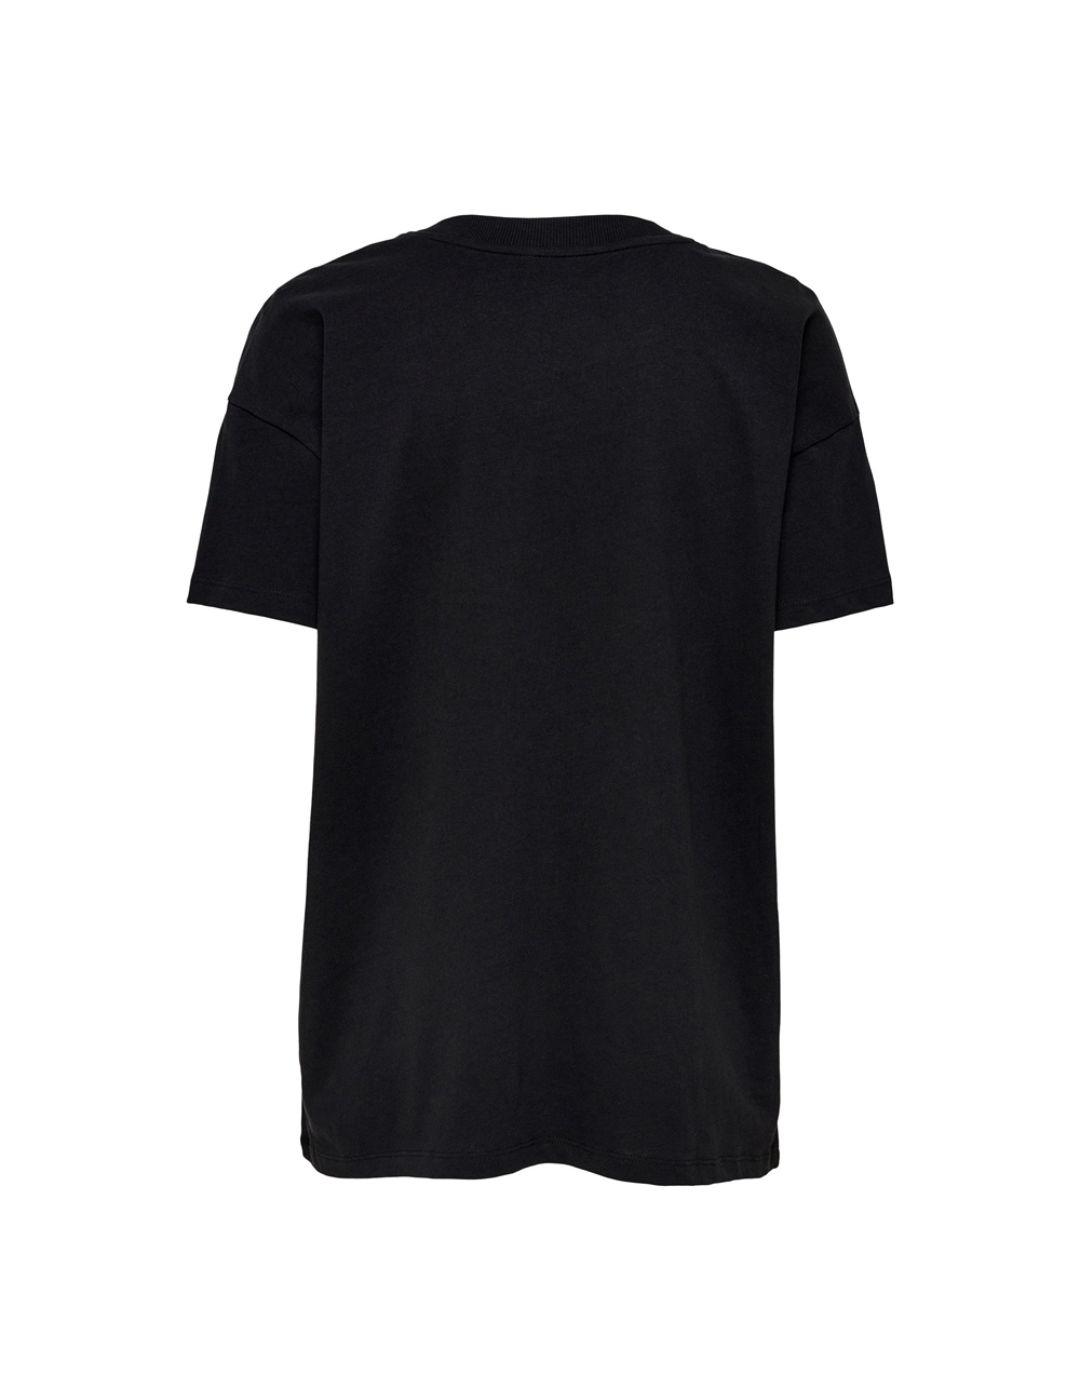 Camiseta Only Gordie negro para mujer -b